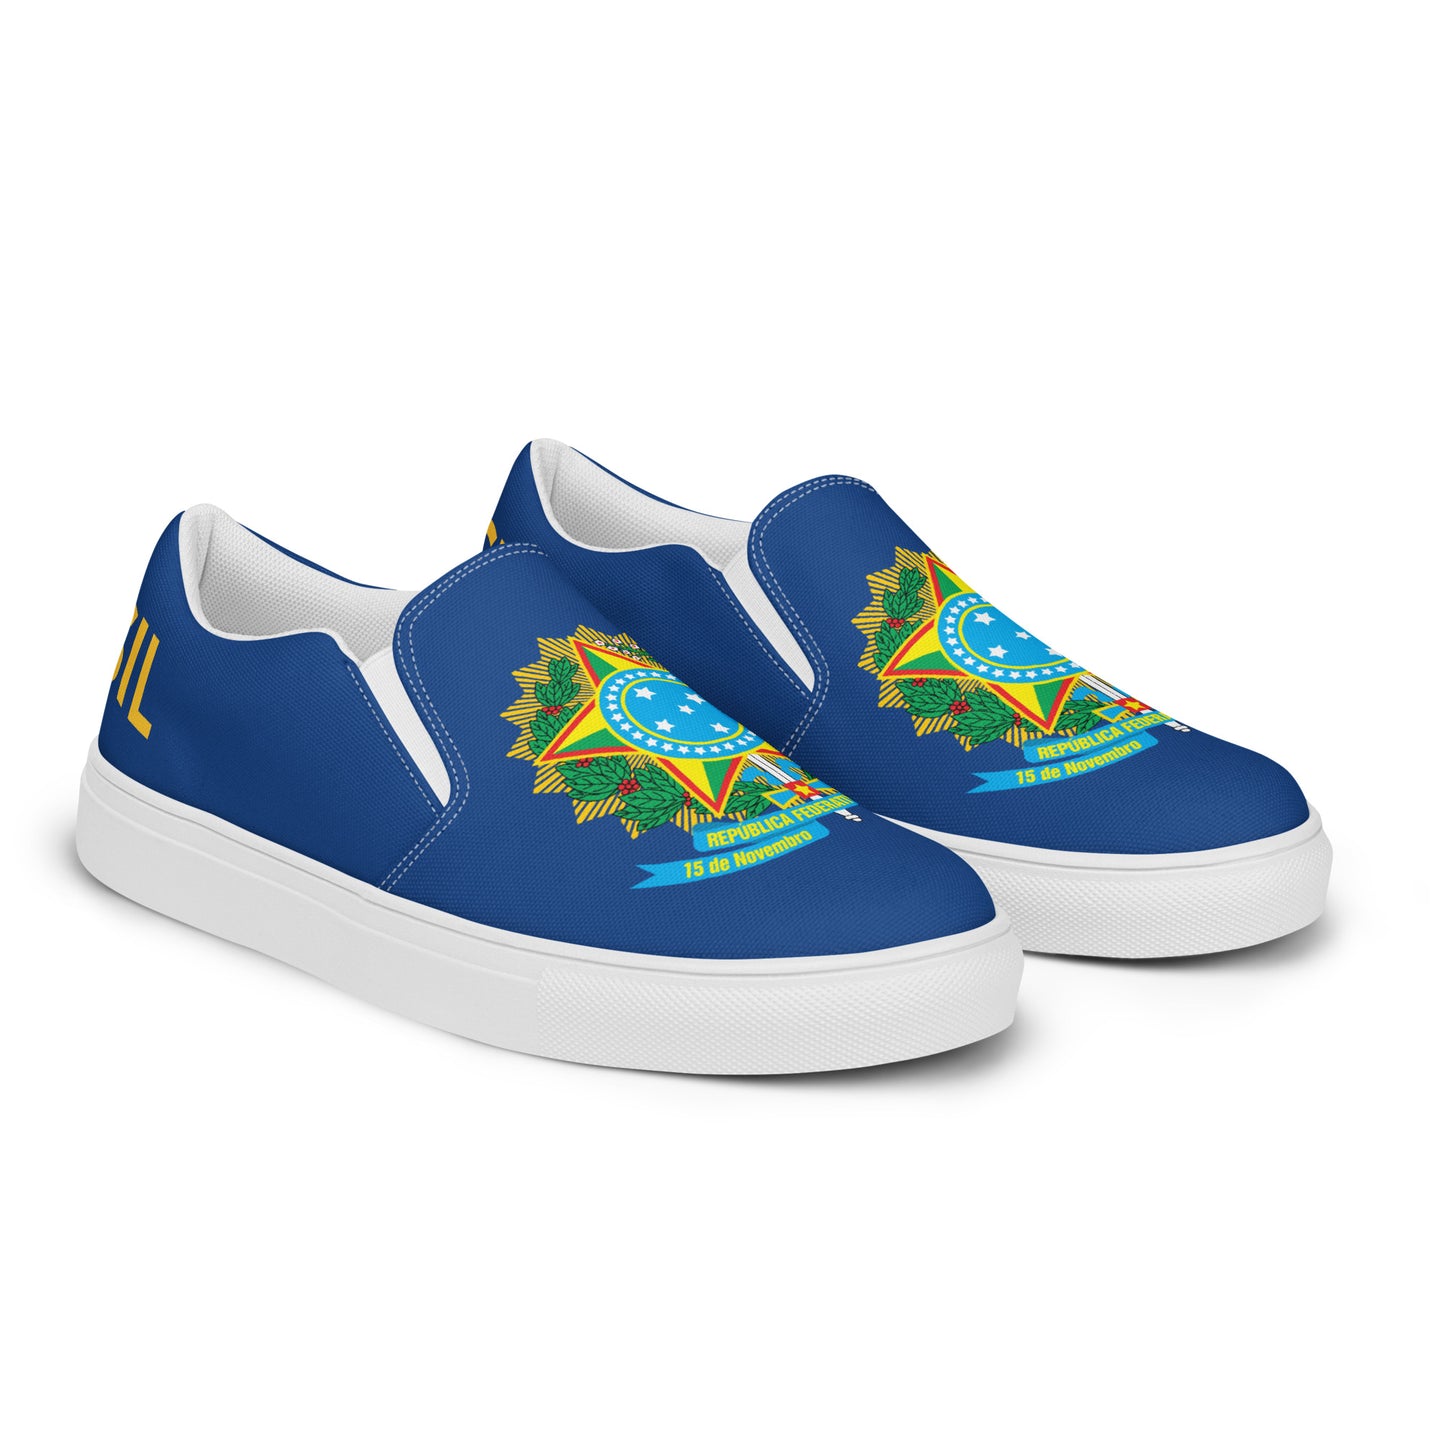 Brasil - Women - Blue - Slip-on shoes